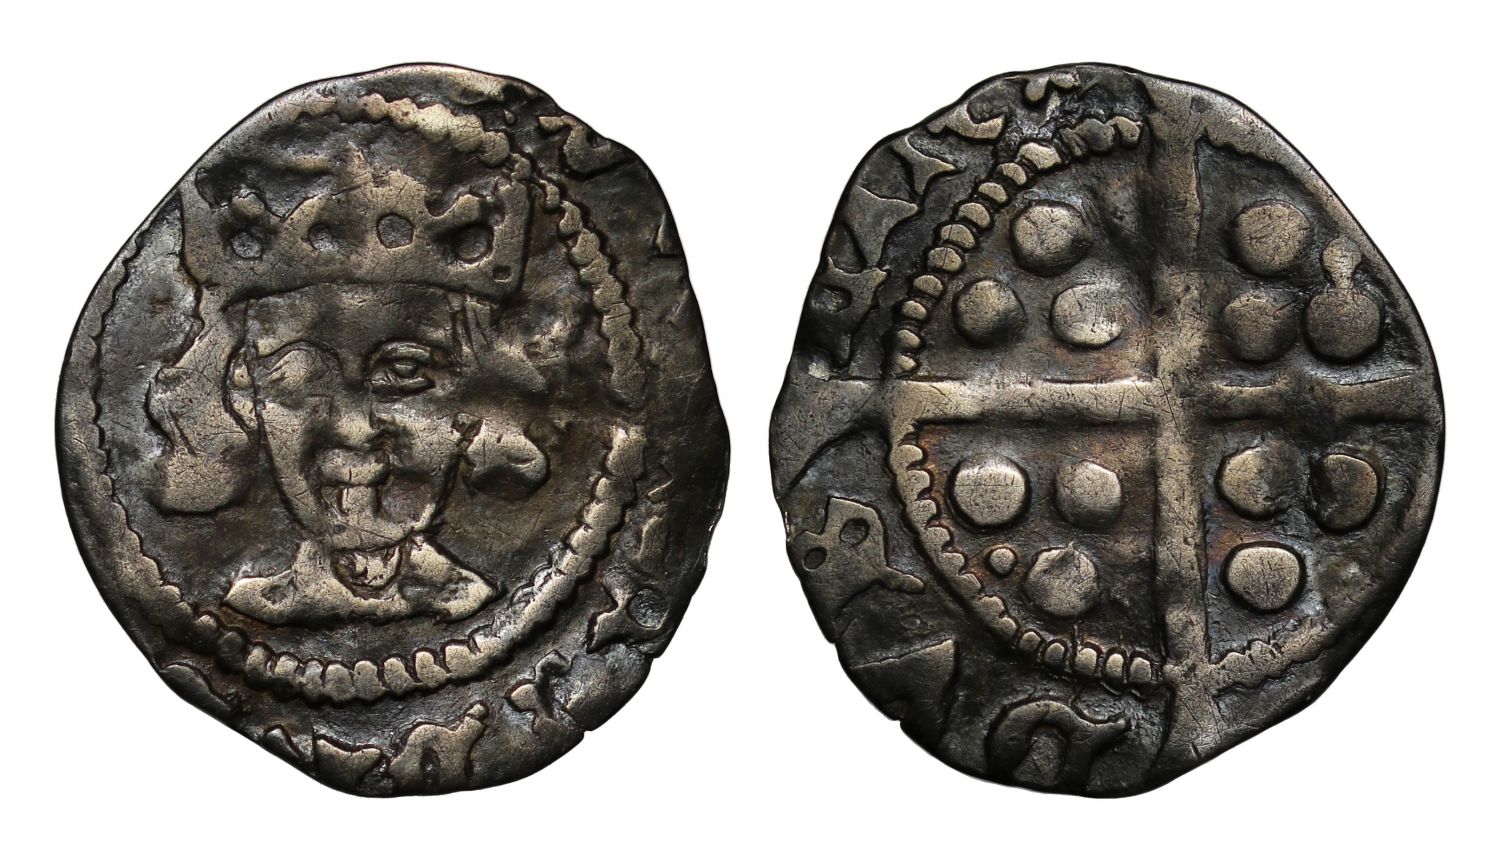 Ireland, Edward IV Penny, Dublin Mint, heavy Cross & Pellets Coinage